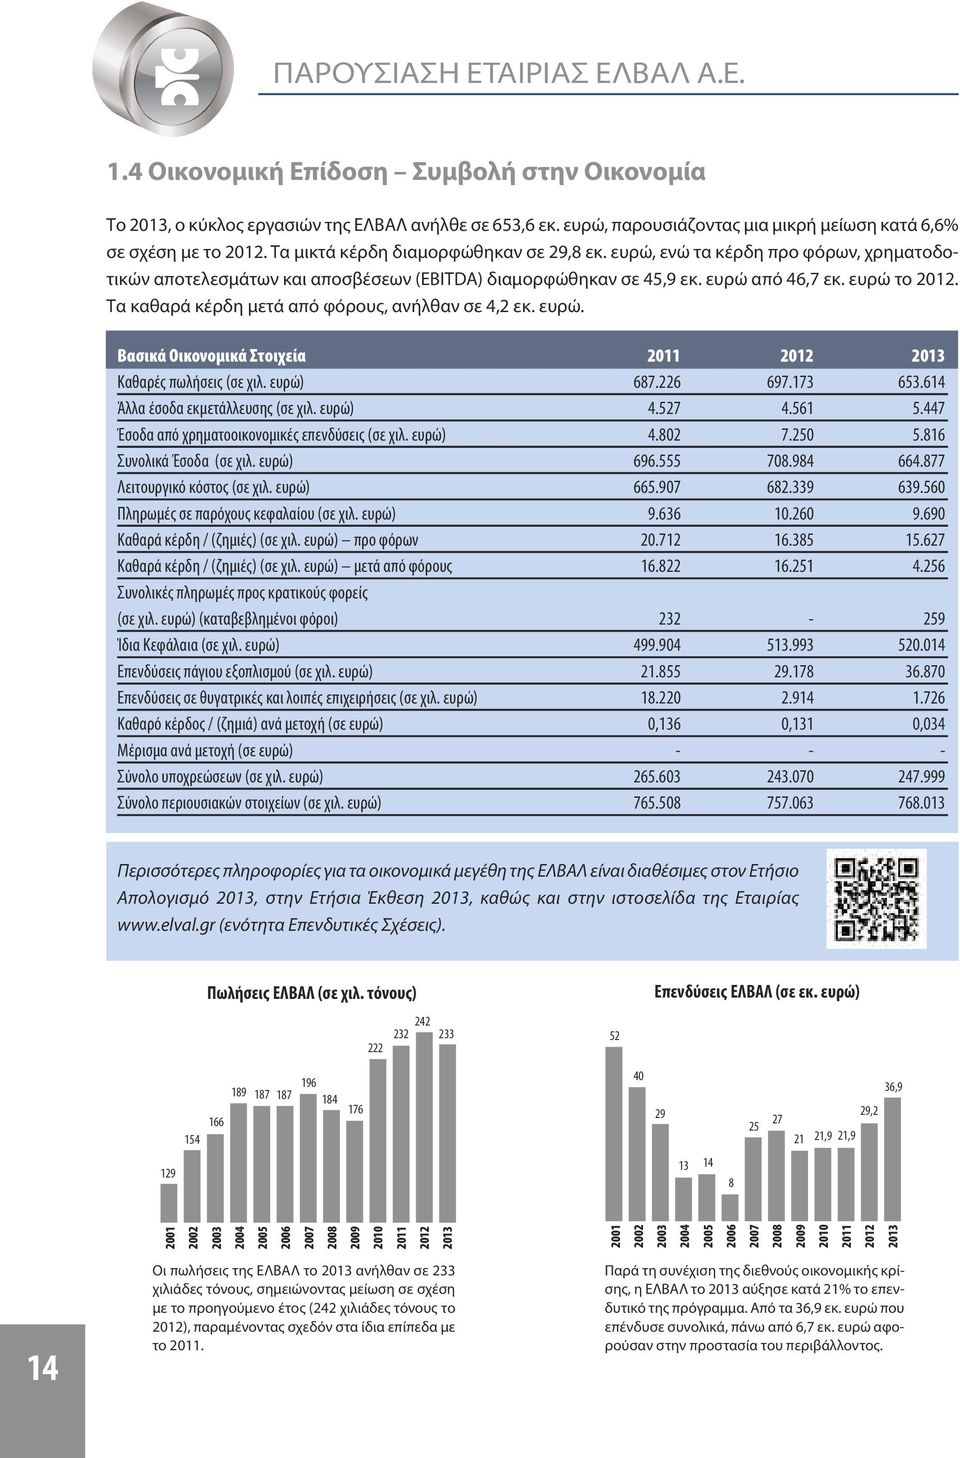 ευρώ, ενώ τα κέρδη προ φόρων, χρηματοδοτικών αποτελεσμάτων και αποσβέσεων (EBITDA) διαμορφώθηκαν σε 45,9 εκ. ευρώ από 46,7 εκ. ευρώ το 2012. Τα καθαρά κέρδη μετά από φόρους, ανήλθαν σε 4,2 εκ. ευρώ. Βασικά Οικονομικά Στοιχεία 2011 2012 2013 Καθαρές πωλήσεις (σε χιλ.